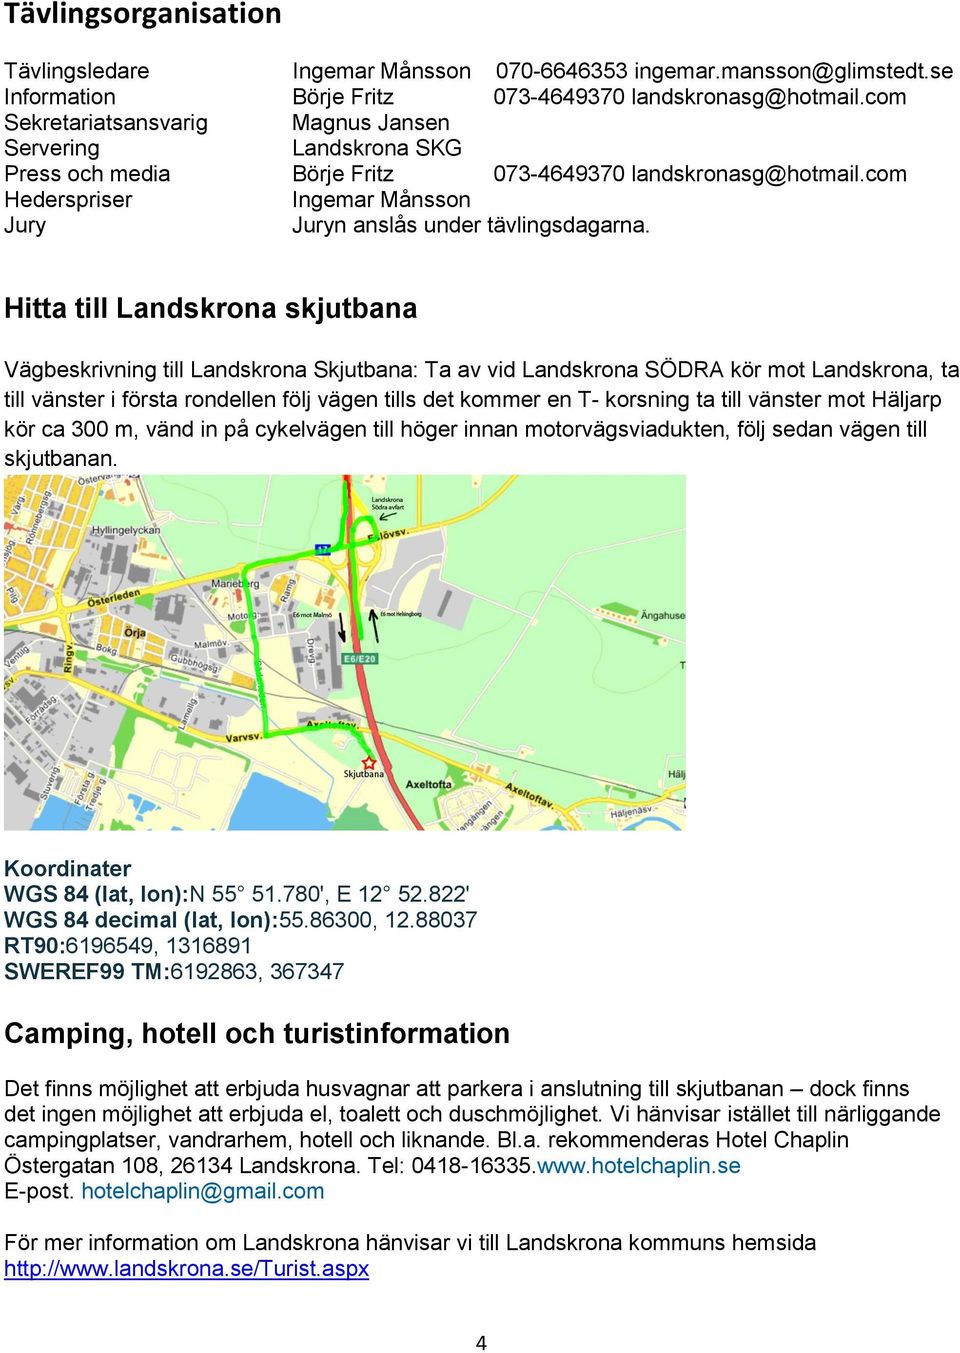 Hitta till Landskrona skjutbana Vägbeskrivning till Landskrona Skjutbana: Ta av vid Landskrona SÖDRA kör mot Landskrona, ta till vänster i första rondellen följ vägen tills det kommer en T- korsning